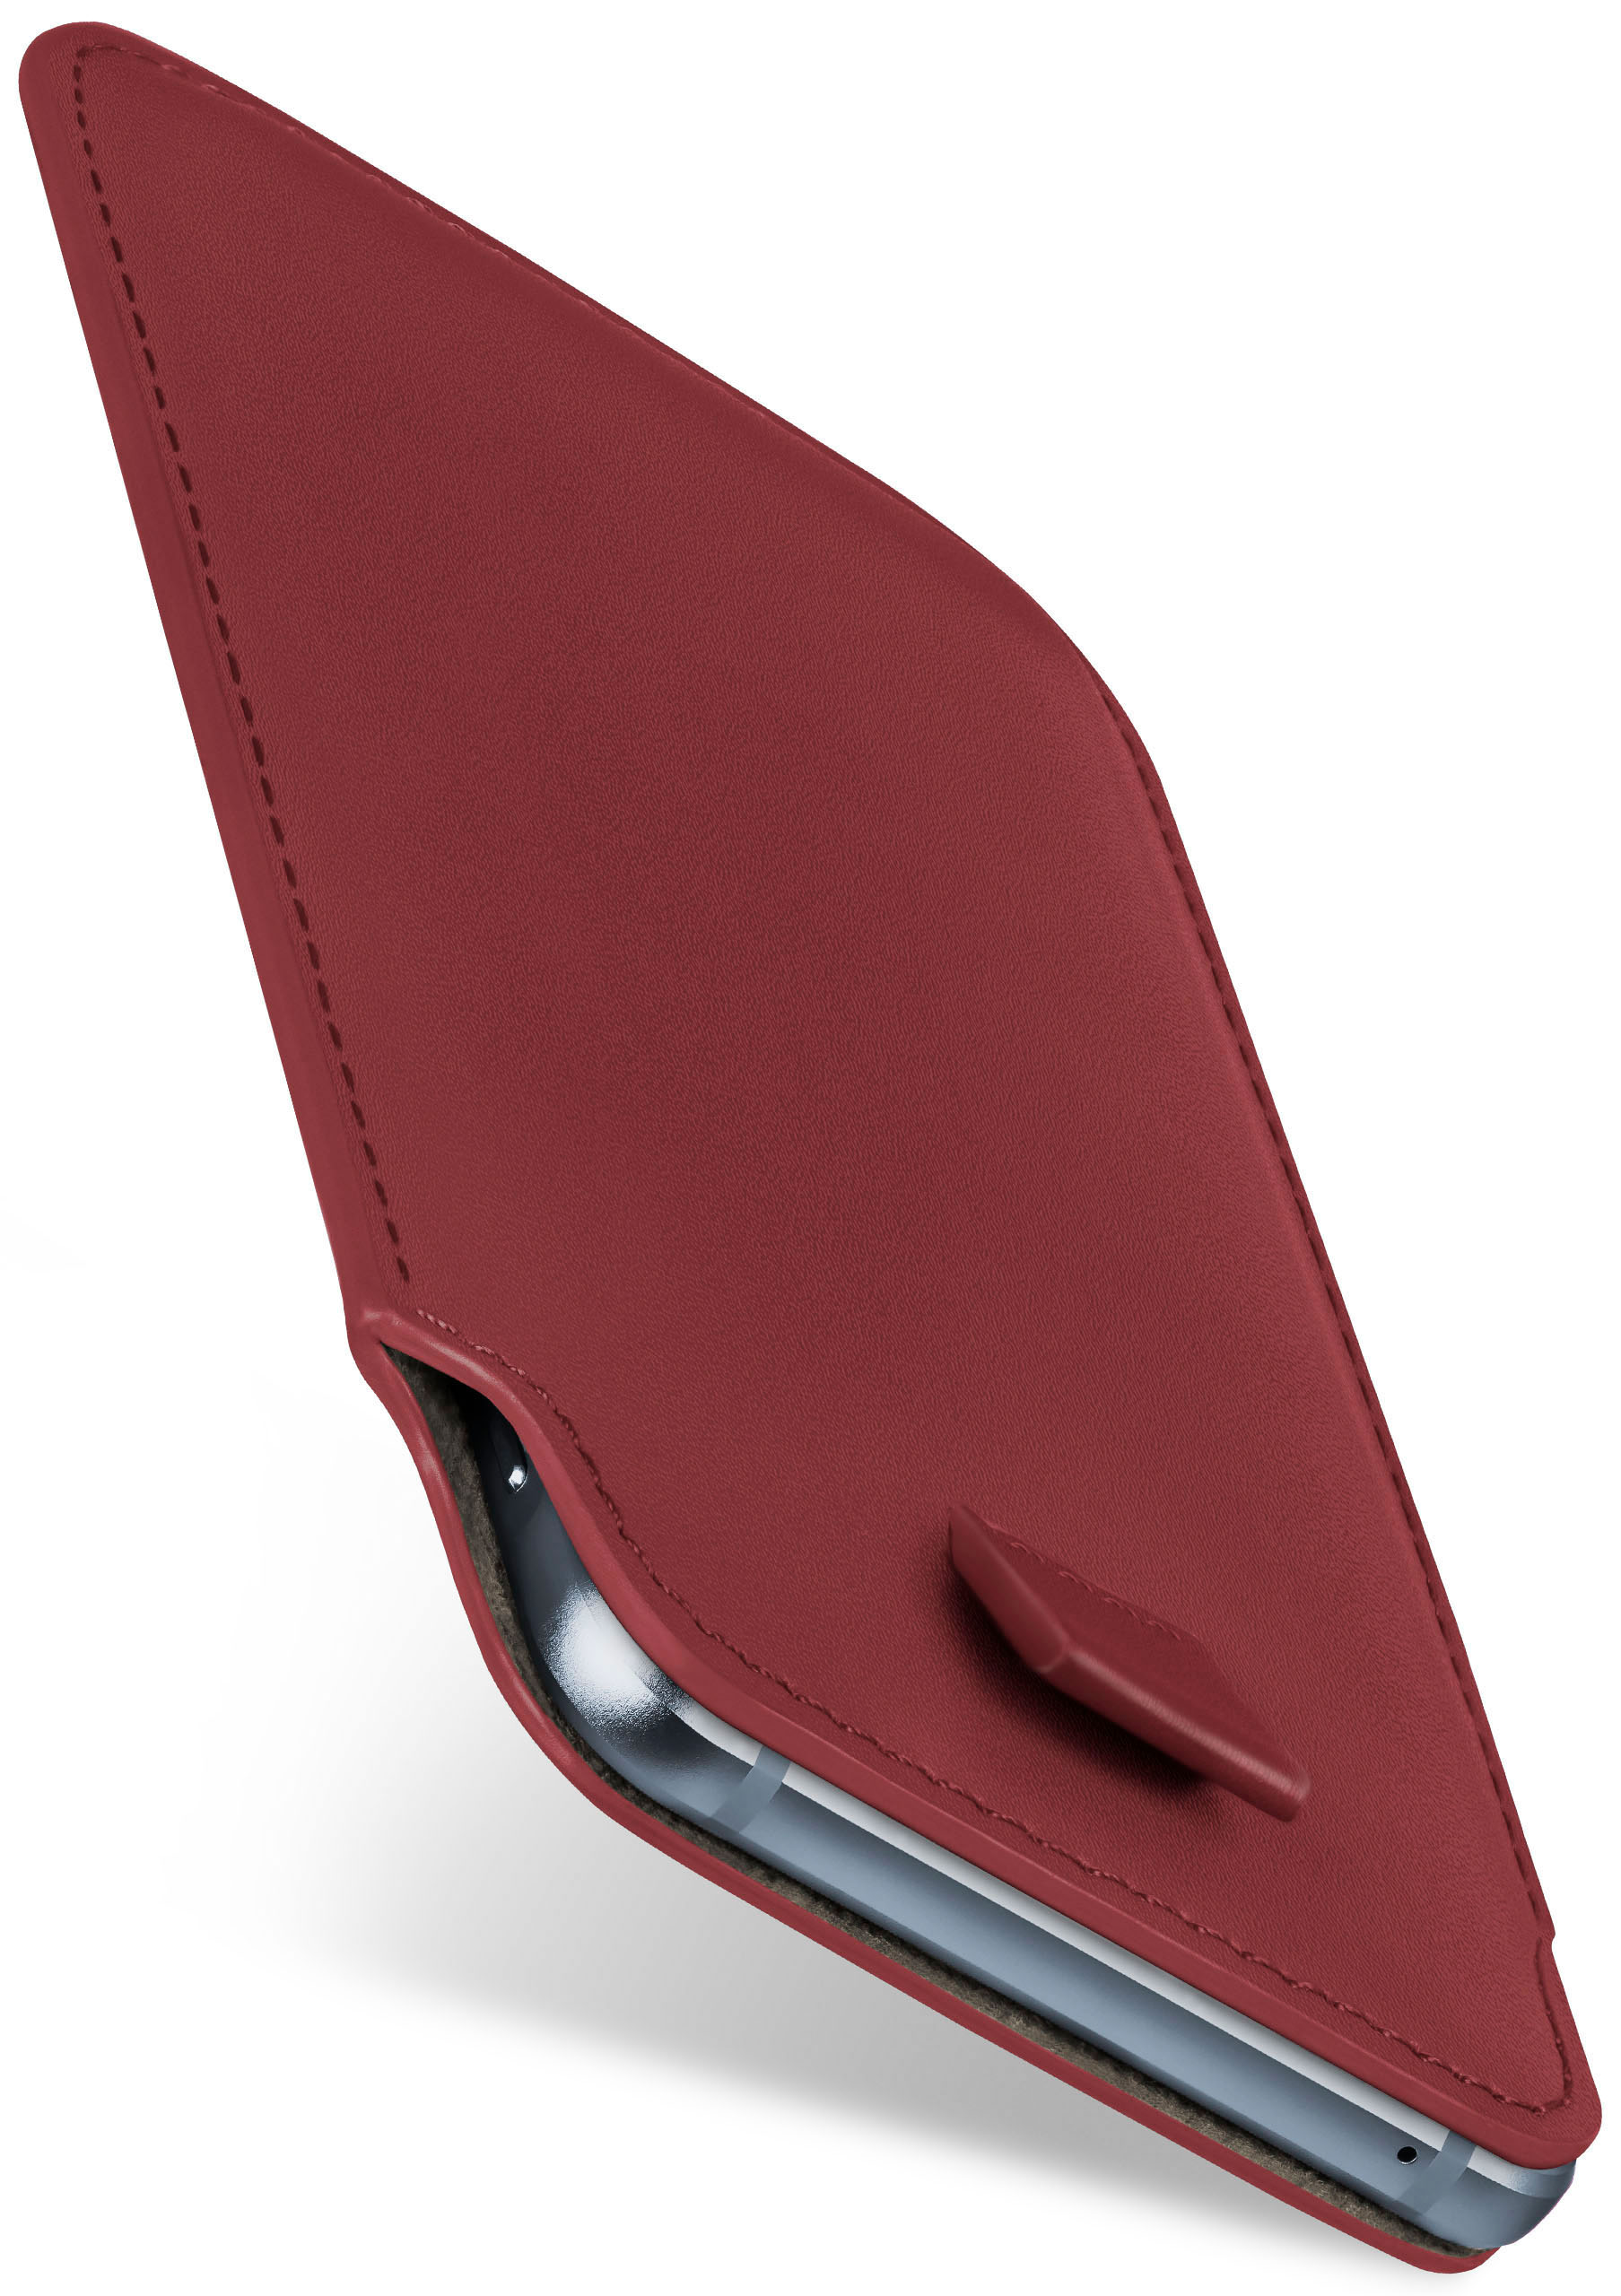 MOEX Slide Case, BlackBerry, Z10, Maroon-Red Cover, Full